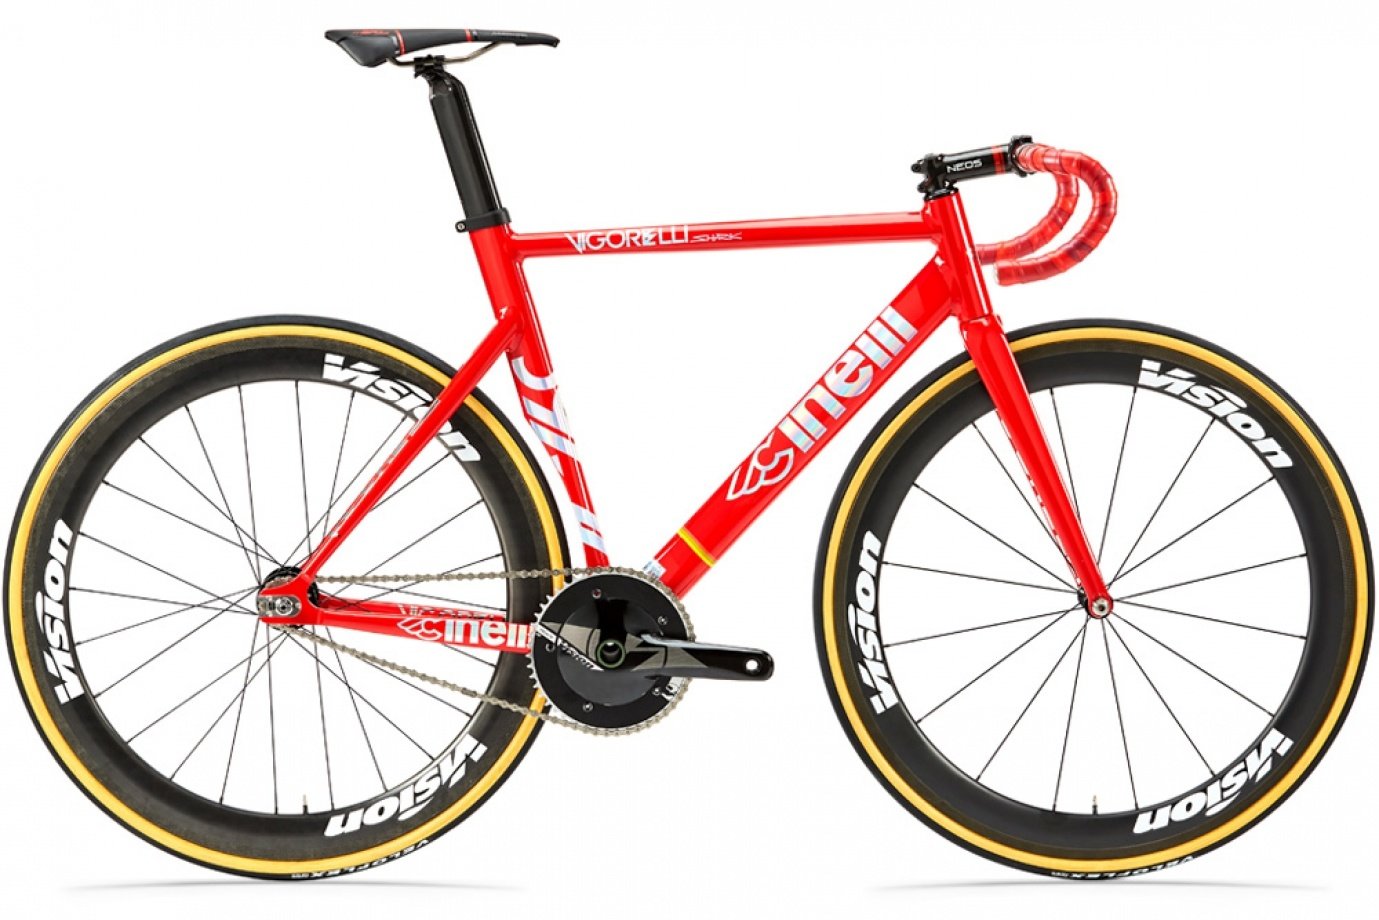 Bicicletta rossa sportiva aerodinamica singlespeed di Cinelli con una velocità singola, sella sportiva e manubrio sportivo curvo.